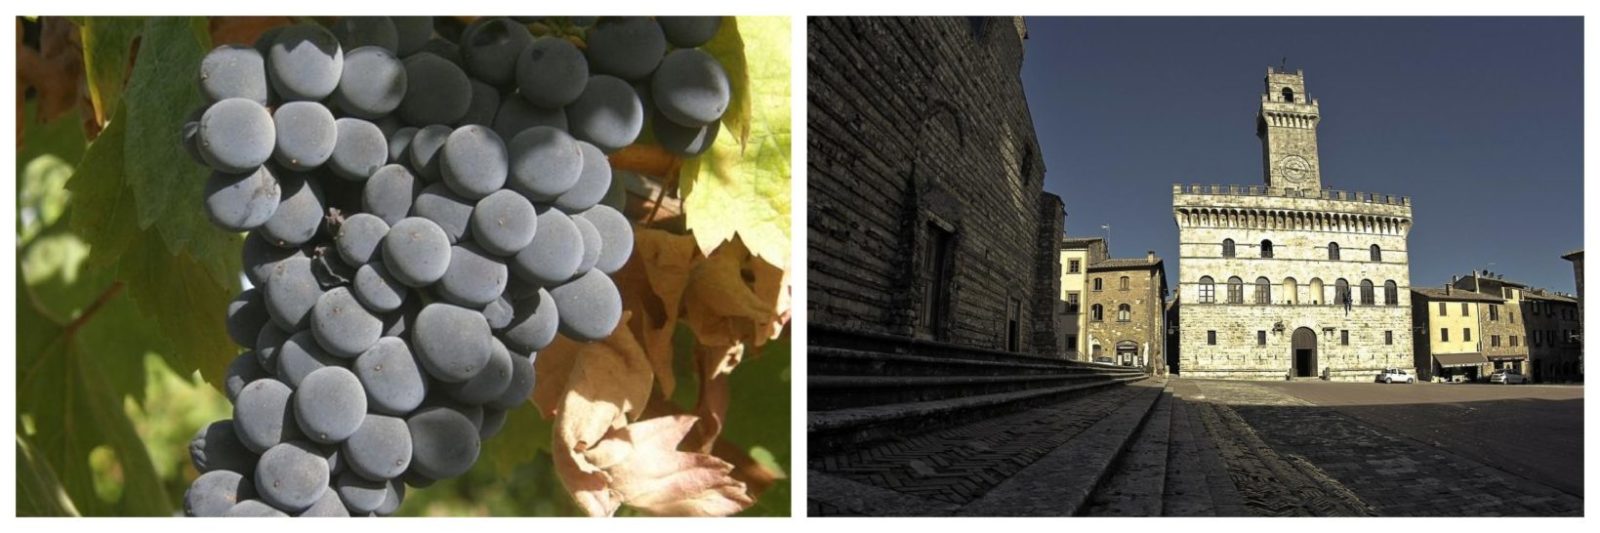 Montepulciano-vitigno-città